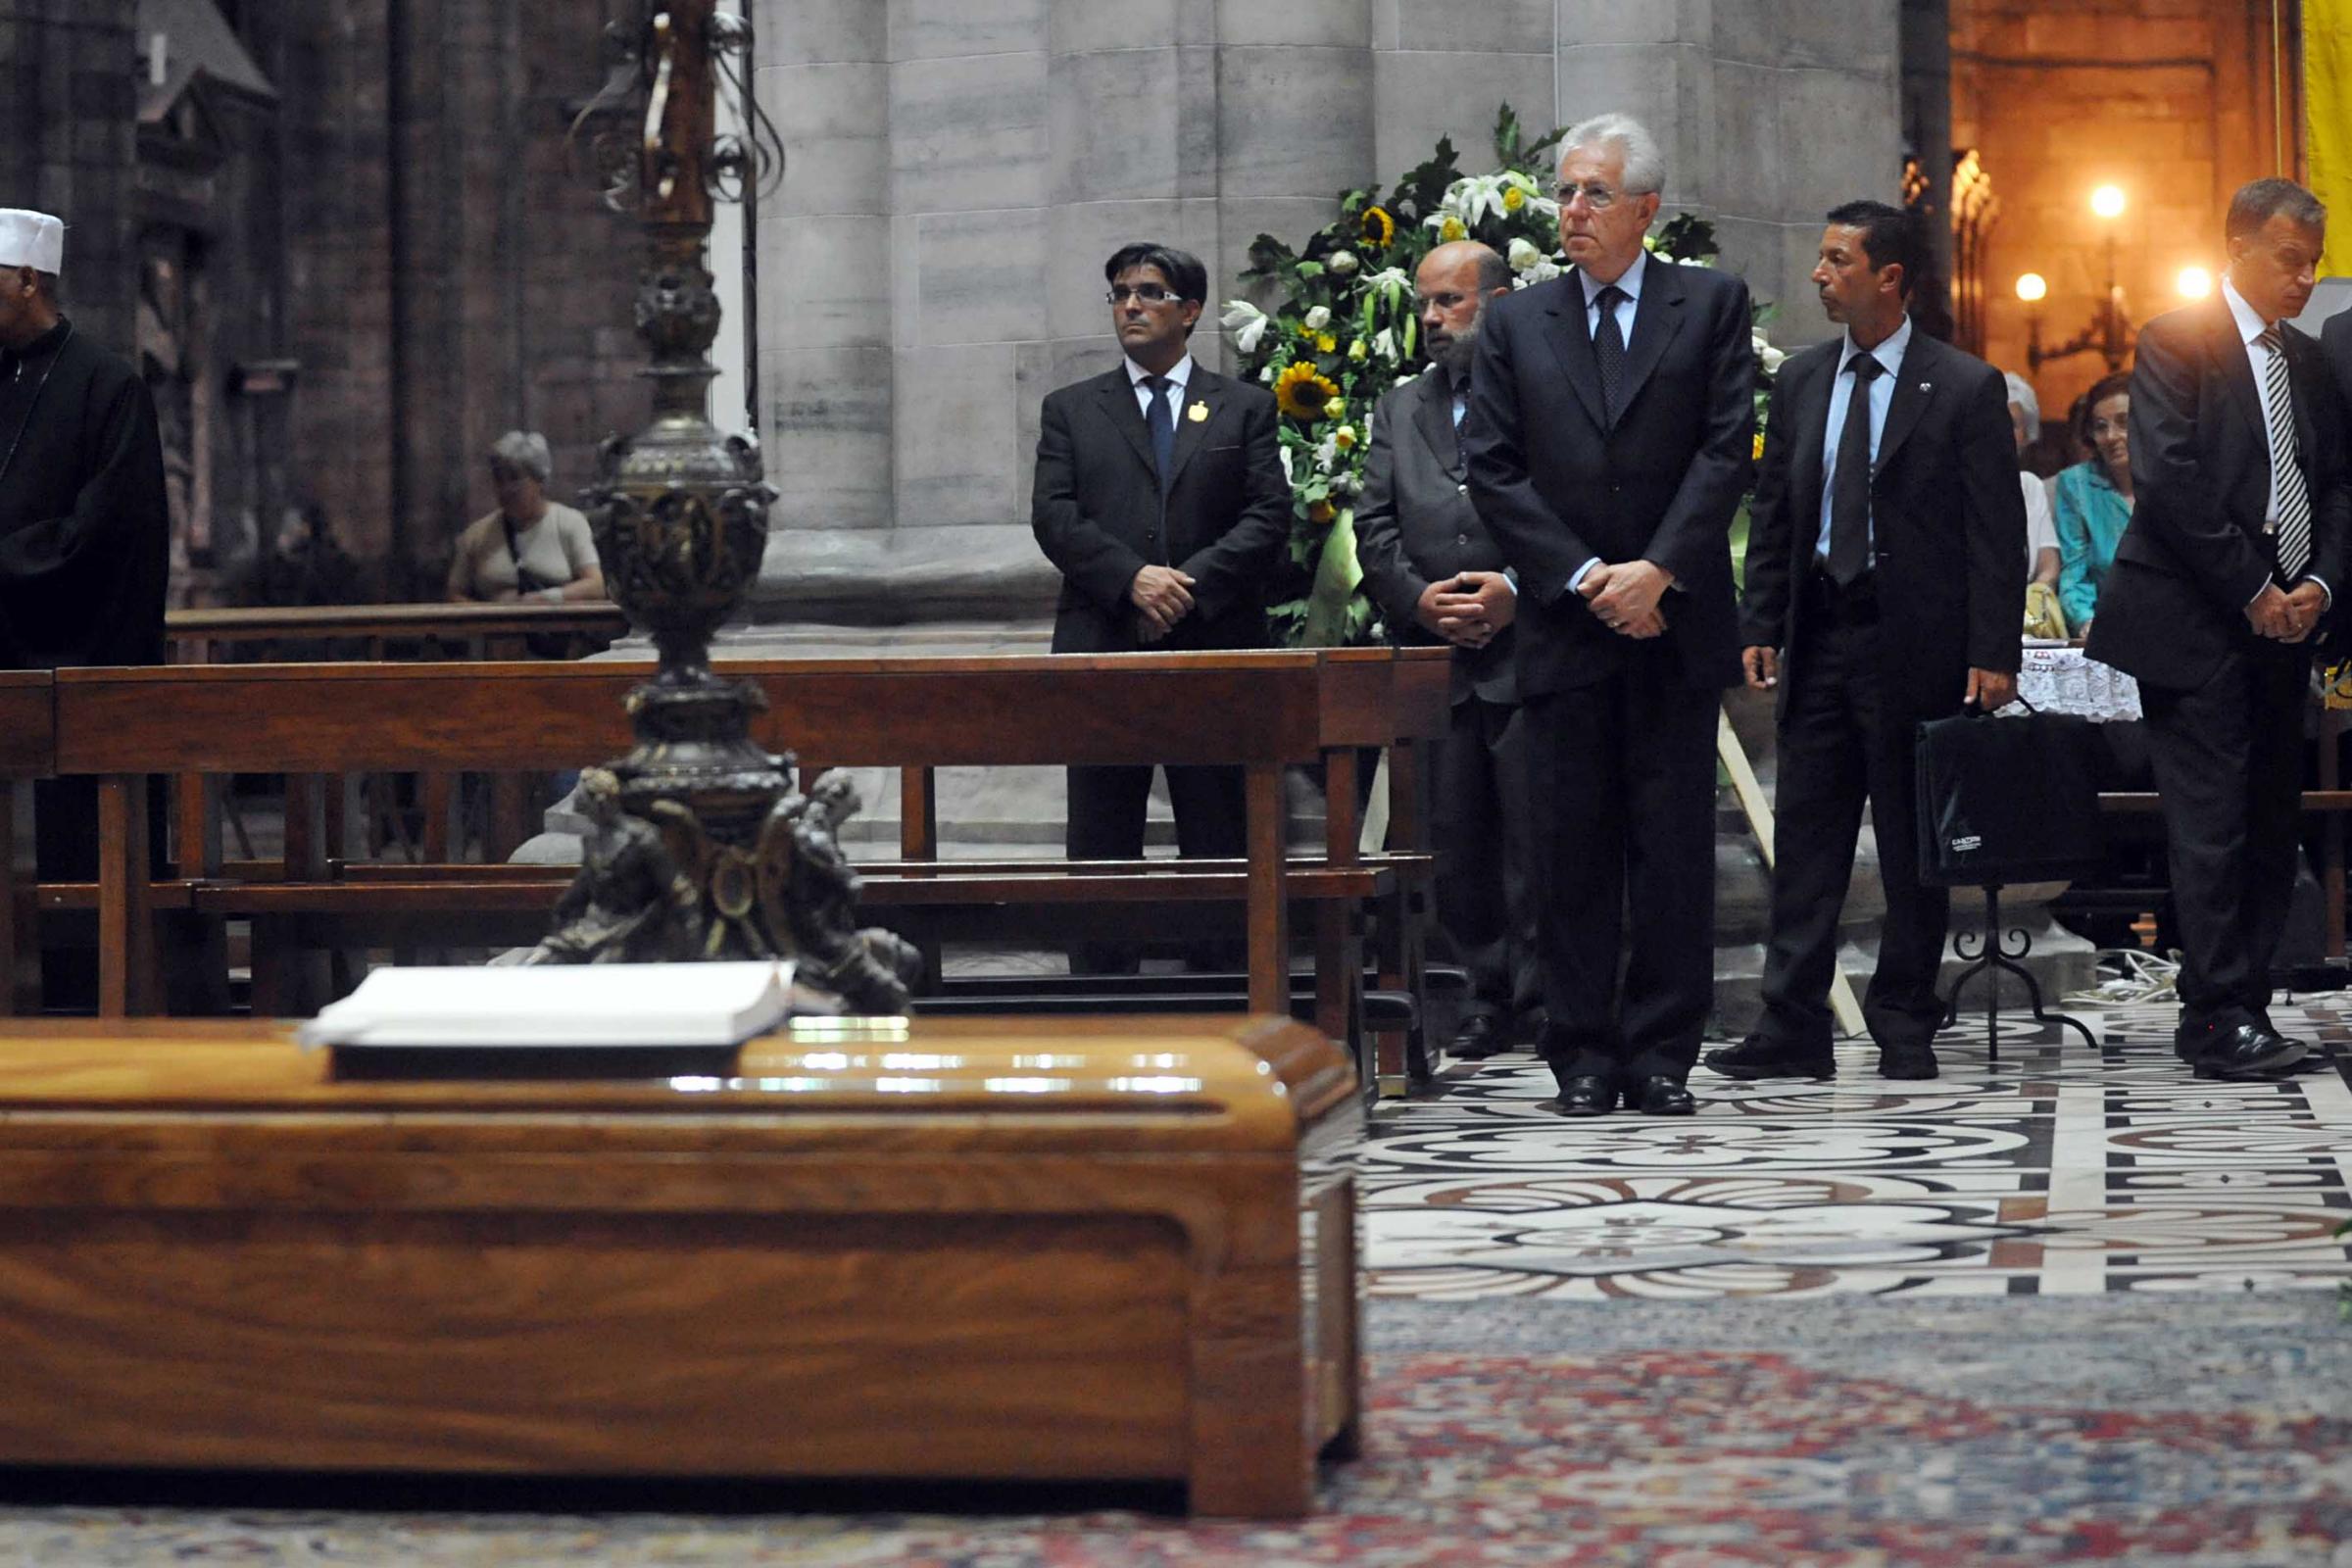 I funerali di Martini, commosso addio all’uomo del dialogo. Il Papa: è stato un uomo di Dio